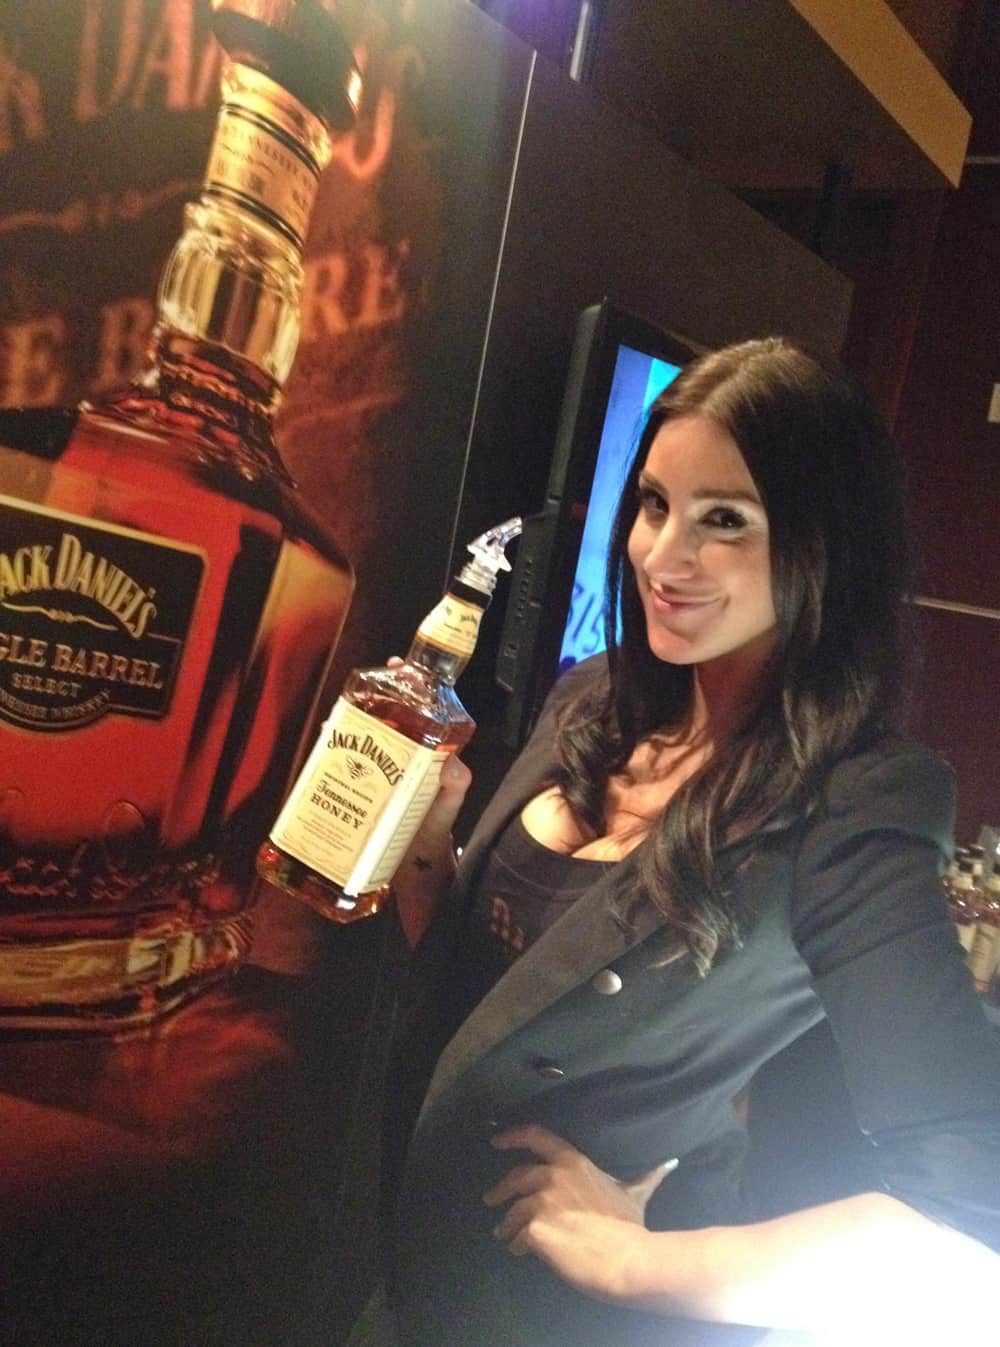 WhiskeyFest 2014 - Jack Daniels Honey, Las Vegas, NV